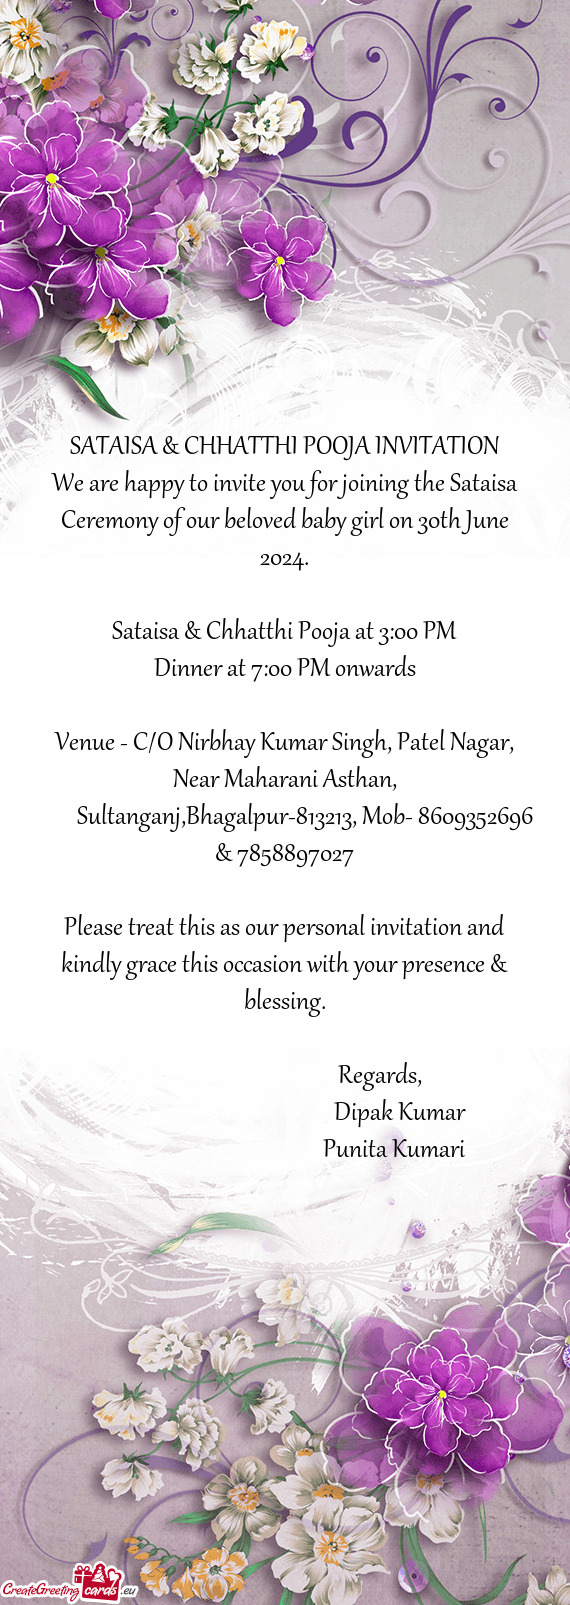 SATAISA & CHHATTHI POOJA INVITATION